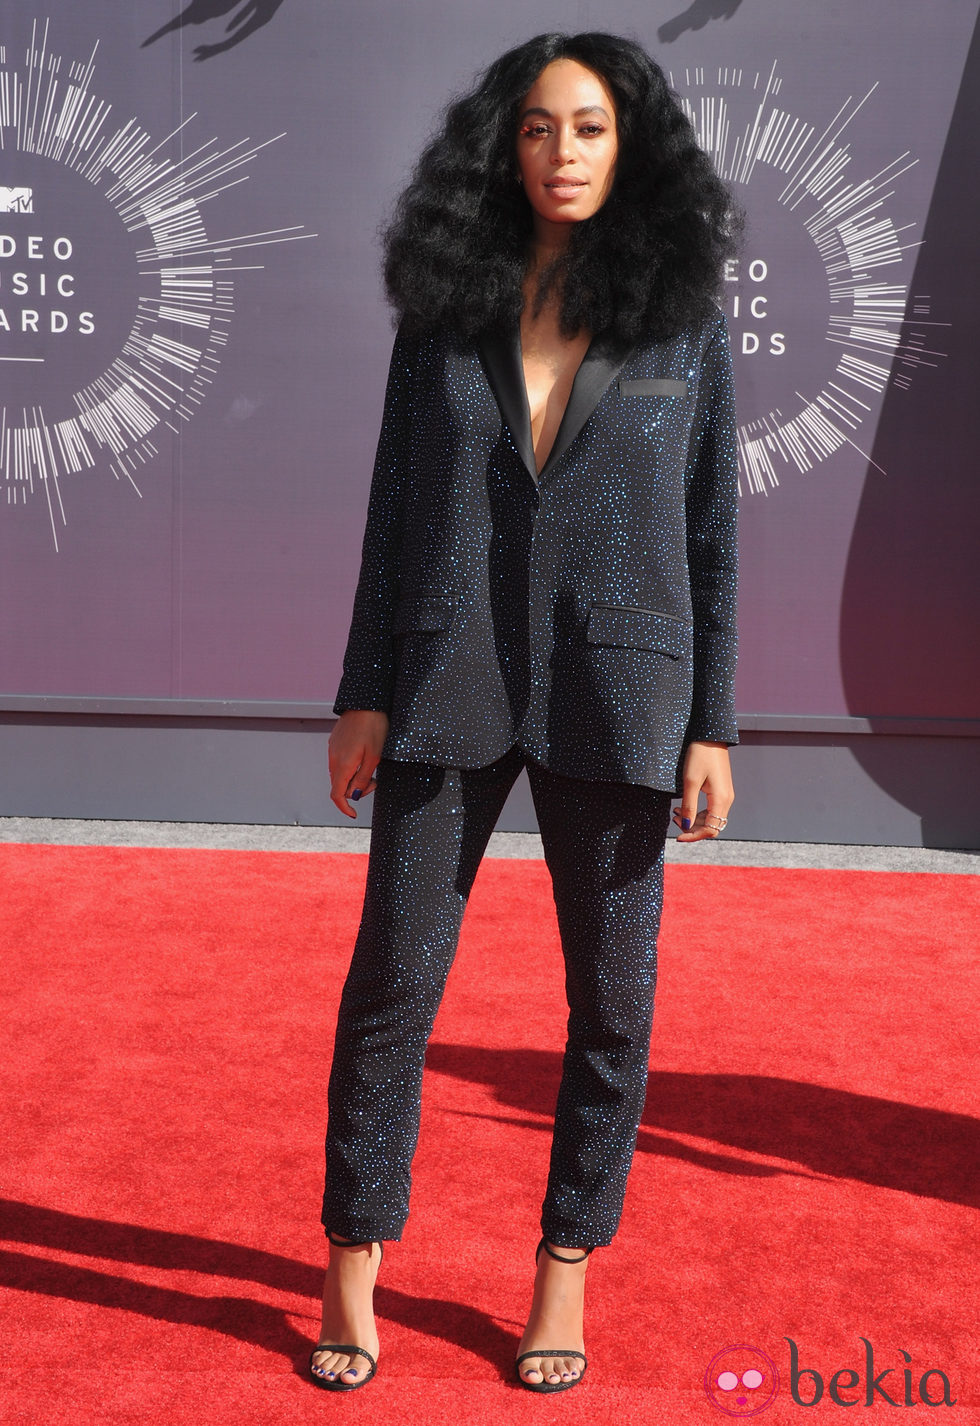 La melena 'afro' de Solange Knowles en los VMA's 2014